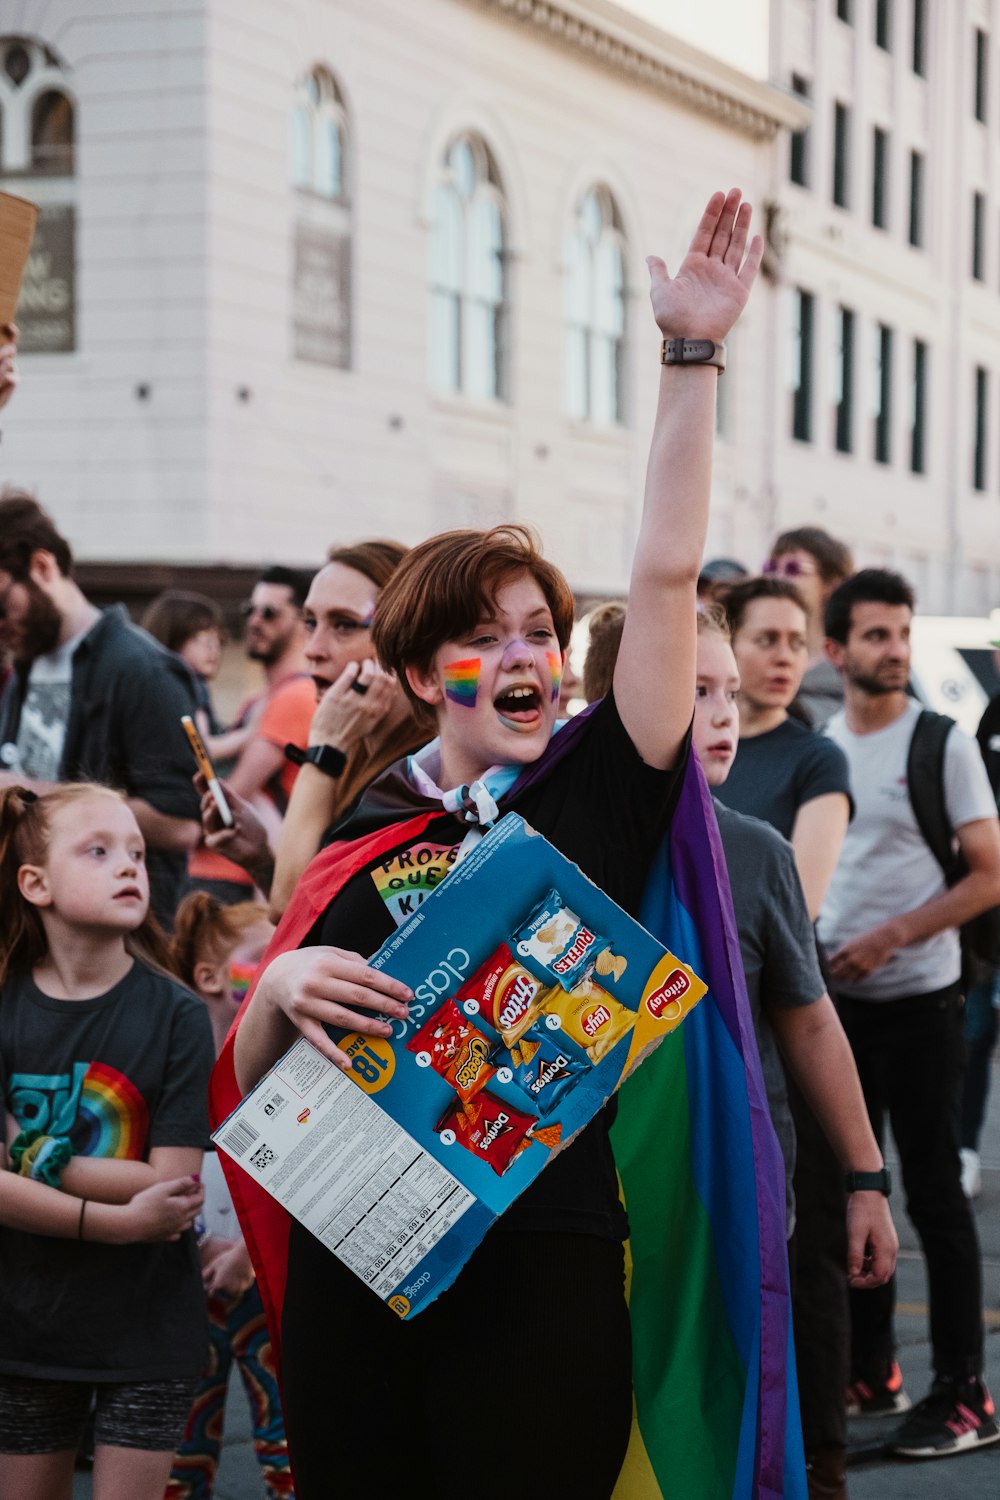 Una mujer con una capa de colores del arco iris y sosteniendo un libro